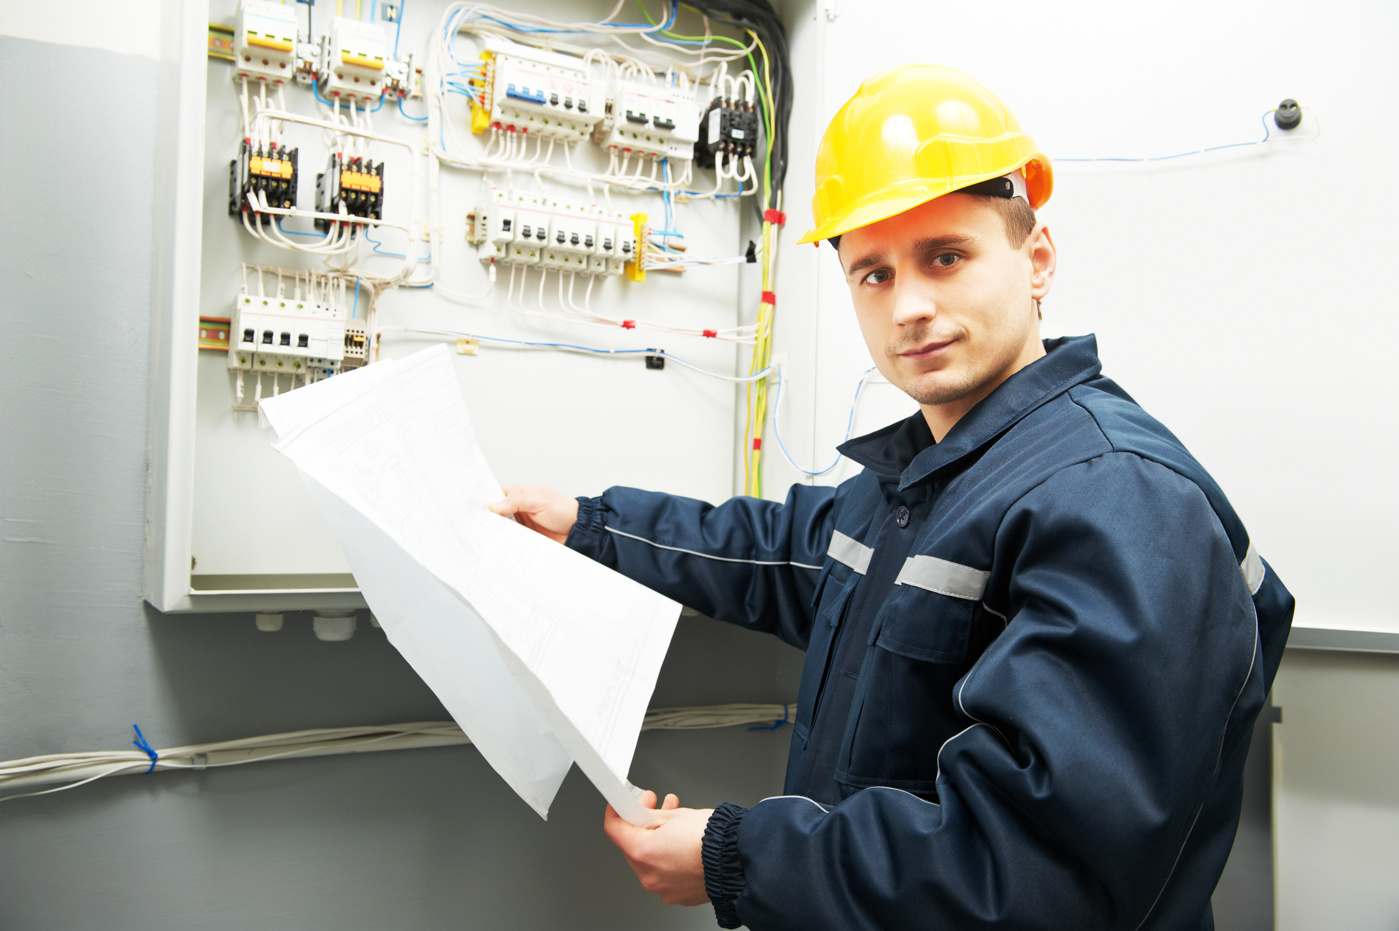 Ein Elektroprojektleiter Installation und Sicherheit mit eidg. Fachausweis kontrolliert eine elektrische Installation in einem Gebäude.